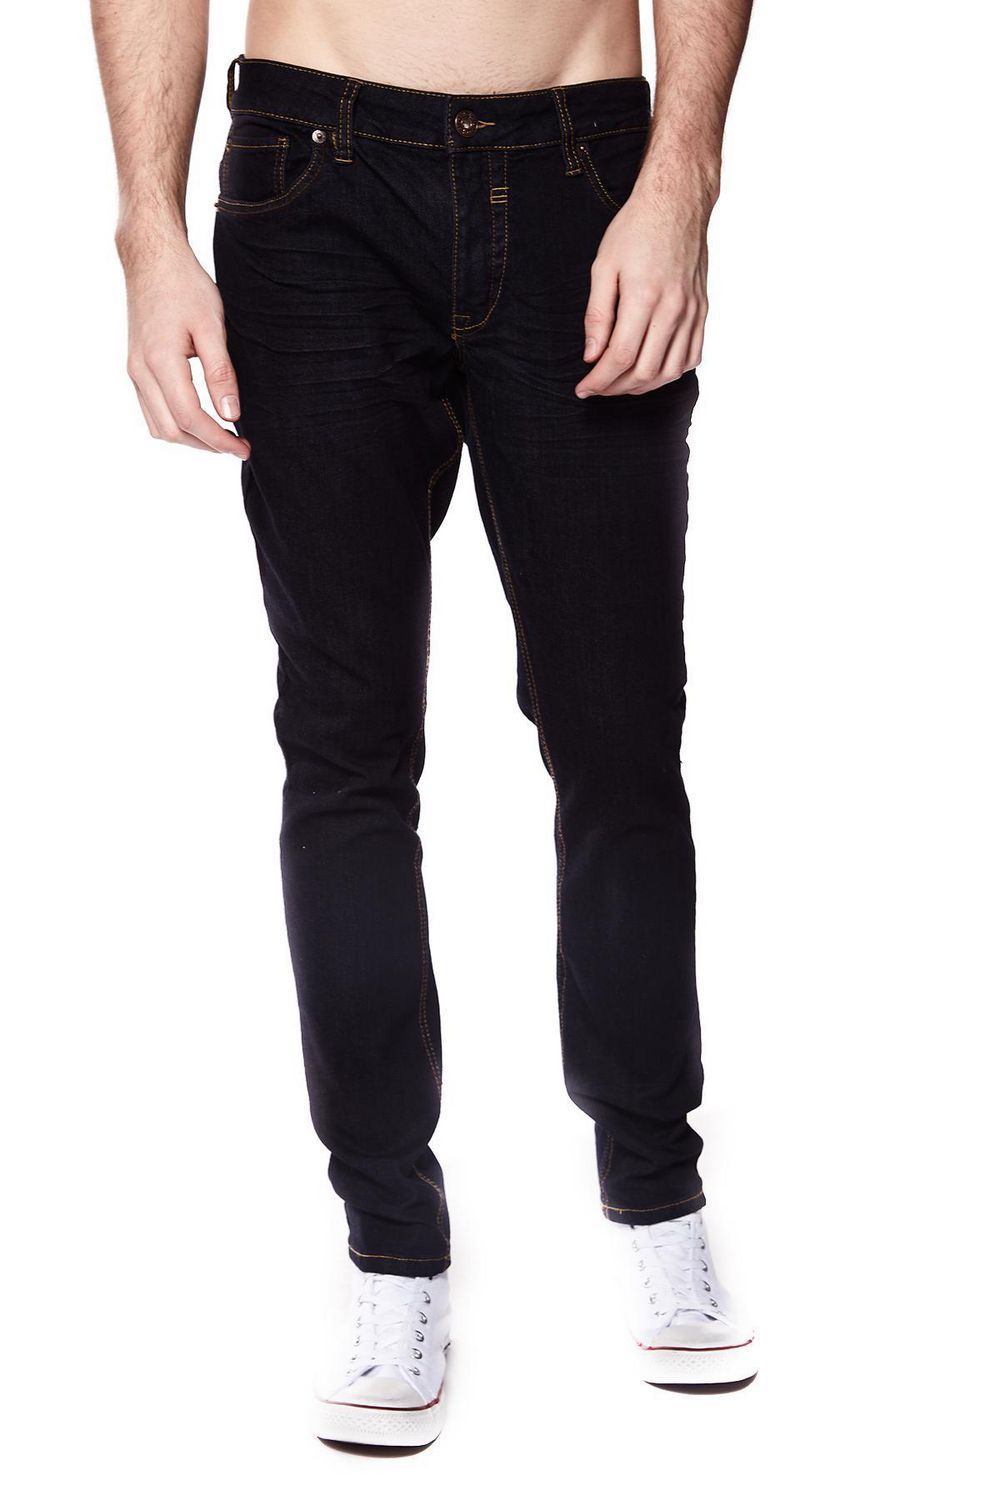 Jeaniologie ™ Men 5-Pocket Slim Fit Jeans | Blue-Black Wash, Sizes 28 - 38